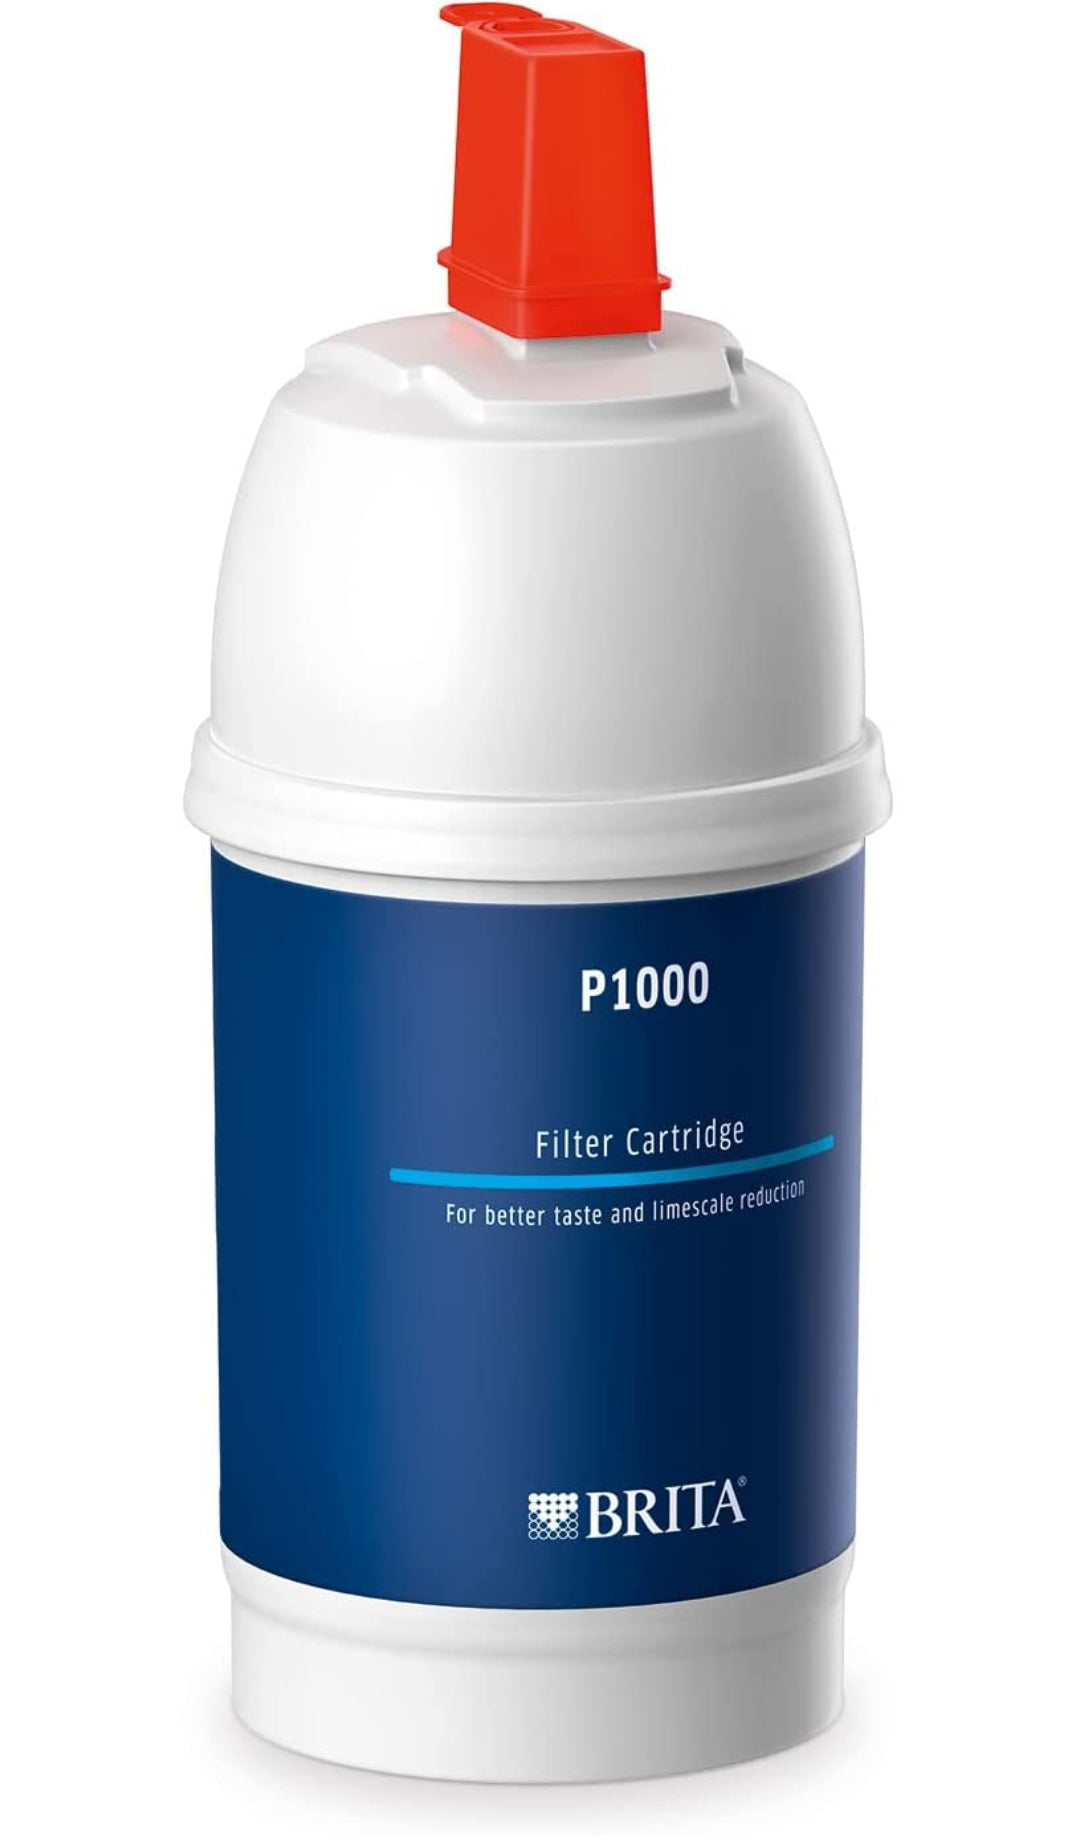 BRITA Filterkartusche P1000 – Filter für BRITA Armaturen zur Reduzierung von Kalk, Chlor & geschmacksstörenden Stoffen im Leitungswasser